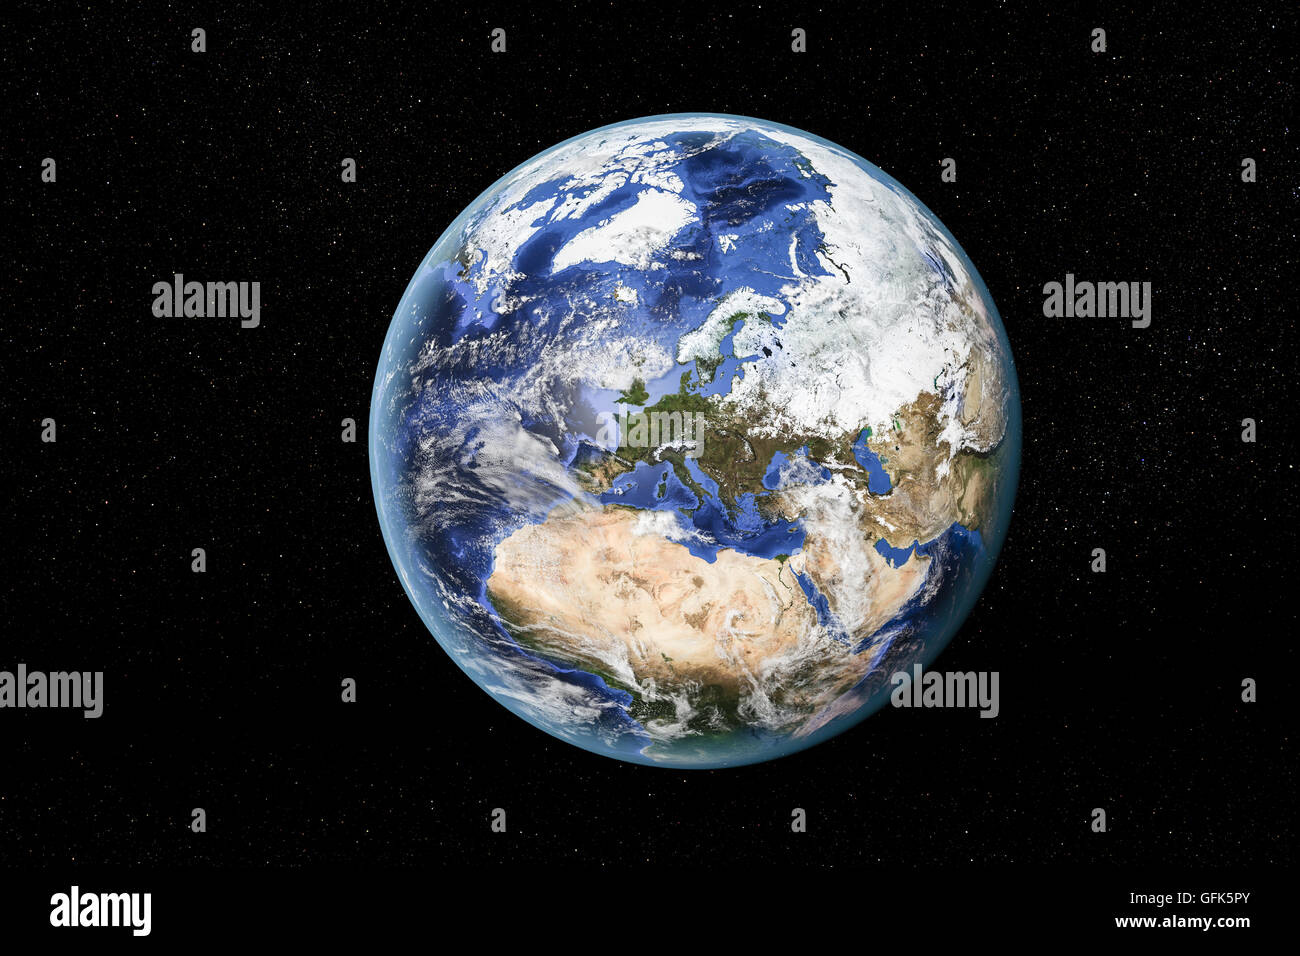 Vue détaillée de la Terre de l'espace, montrant l'Afrique du Nord, en Europe et au Moyen-Orient. Éléments de cette image fournie par la NASA Banque D'Images